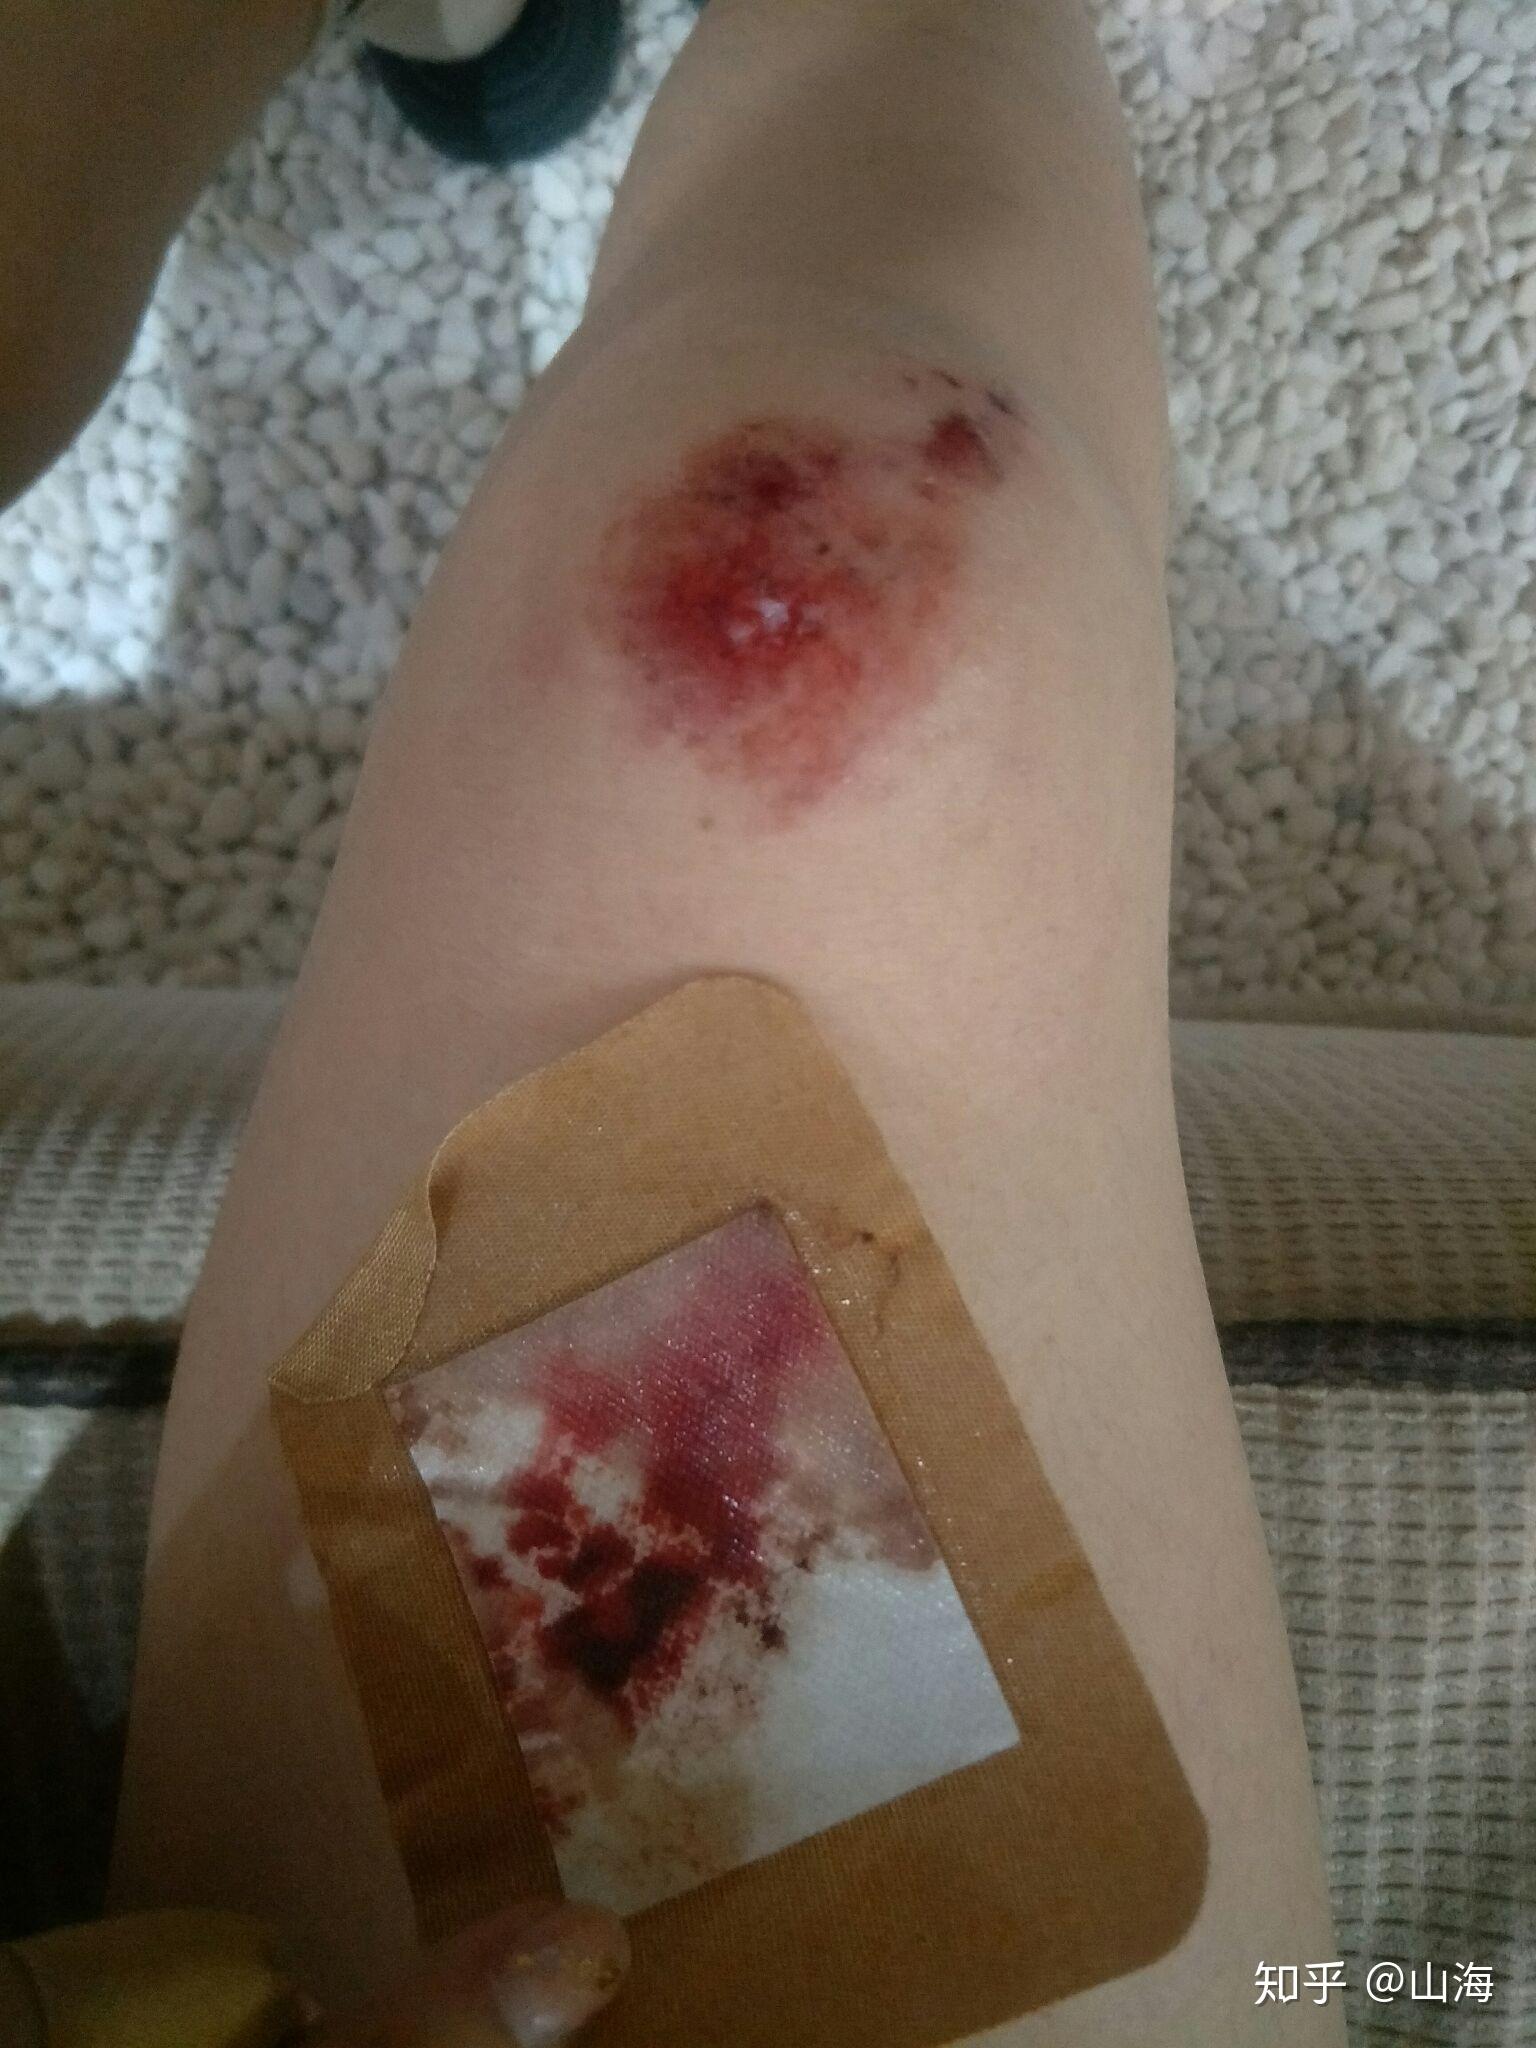 骑车侧翻膝盖摔伤破皮,怎么处理伤口,怎样才能不留疤? 